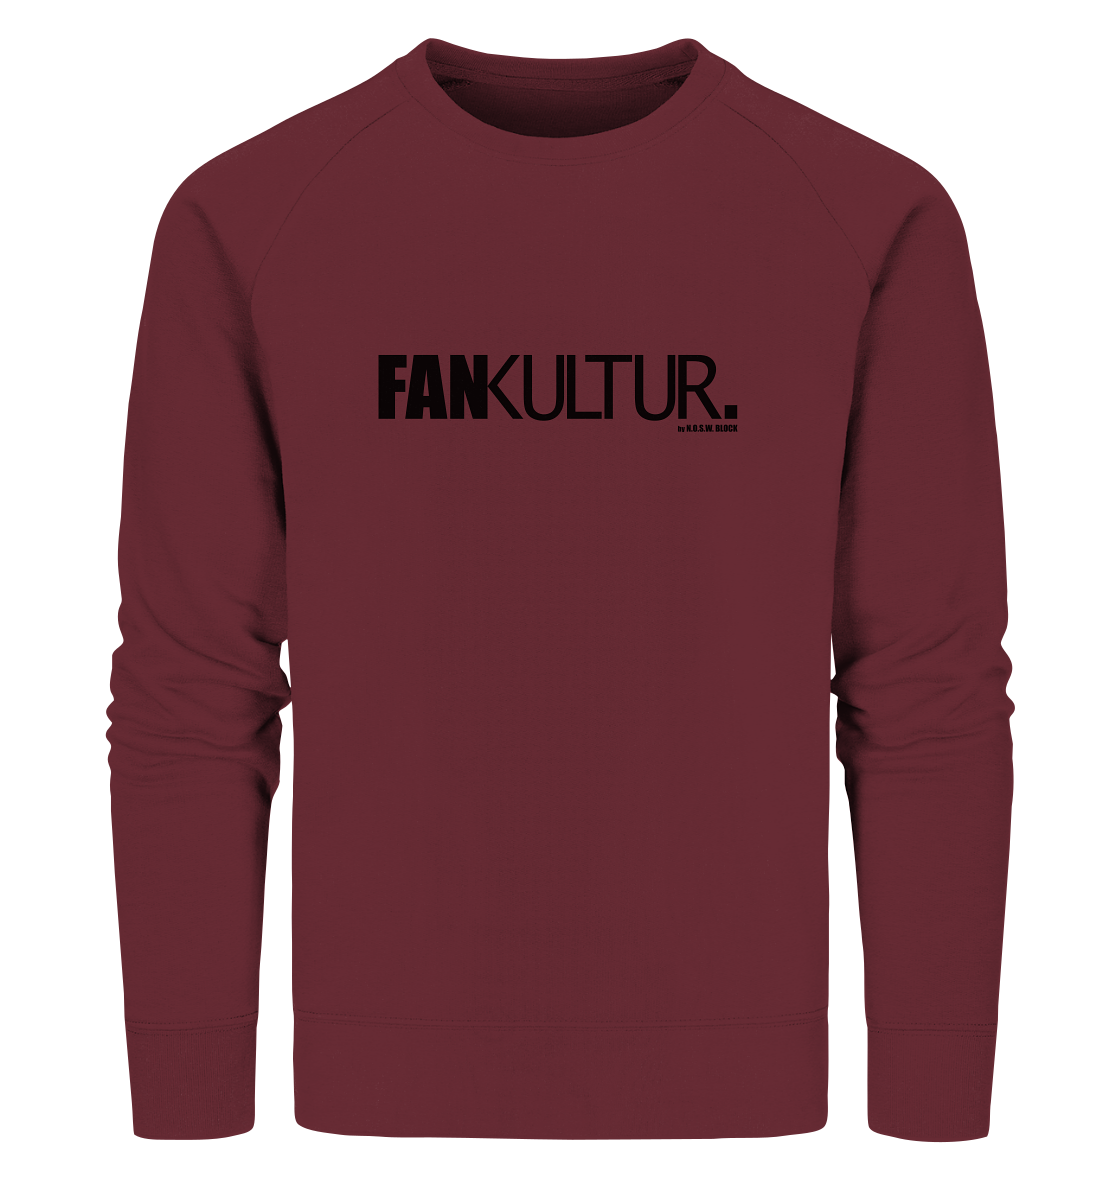 N.O.S.W. BLOCK Fanblock Sweater "FAN KULTUR." Männer Organic Sweatshirt weinrot